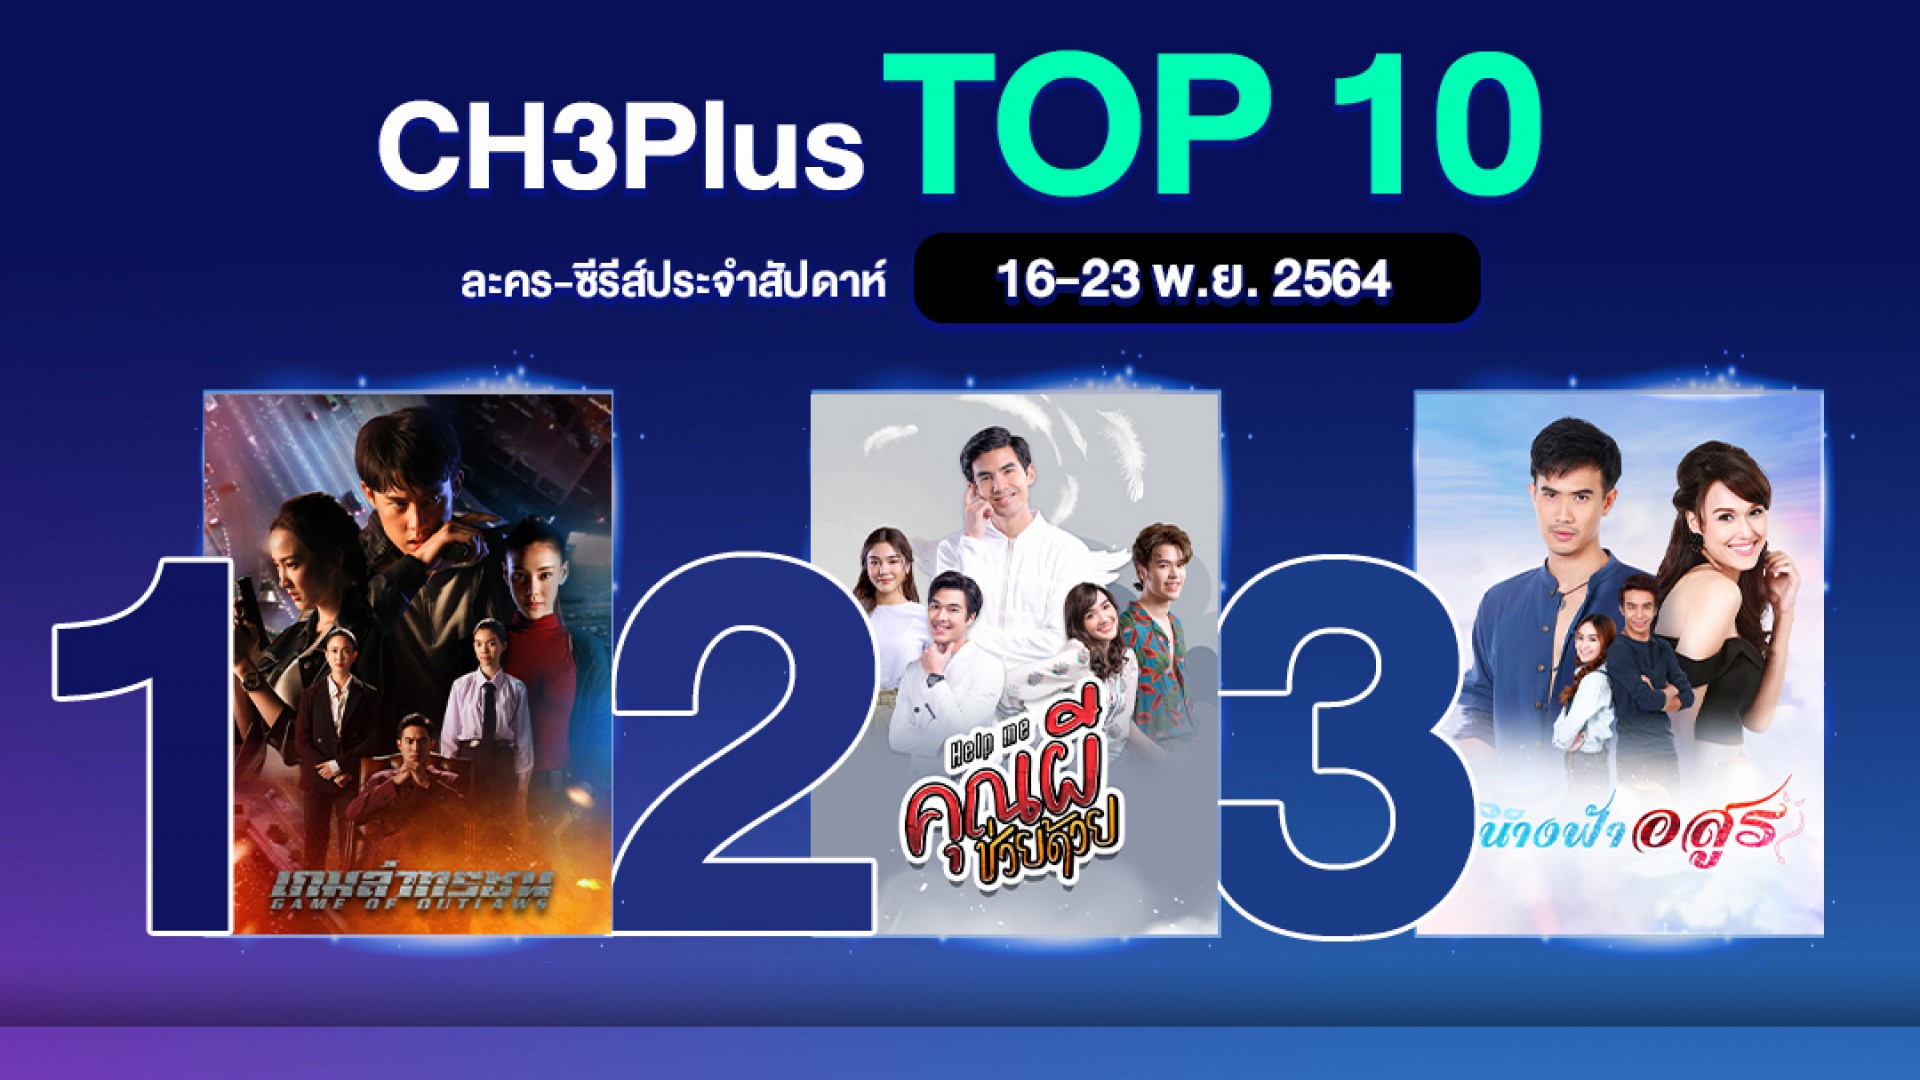 “กะรัตรัก” มาแรง! เข้าชาร์ต CH3Plus Top 10